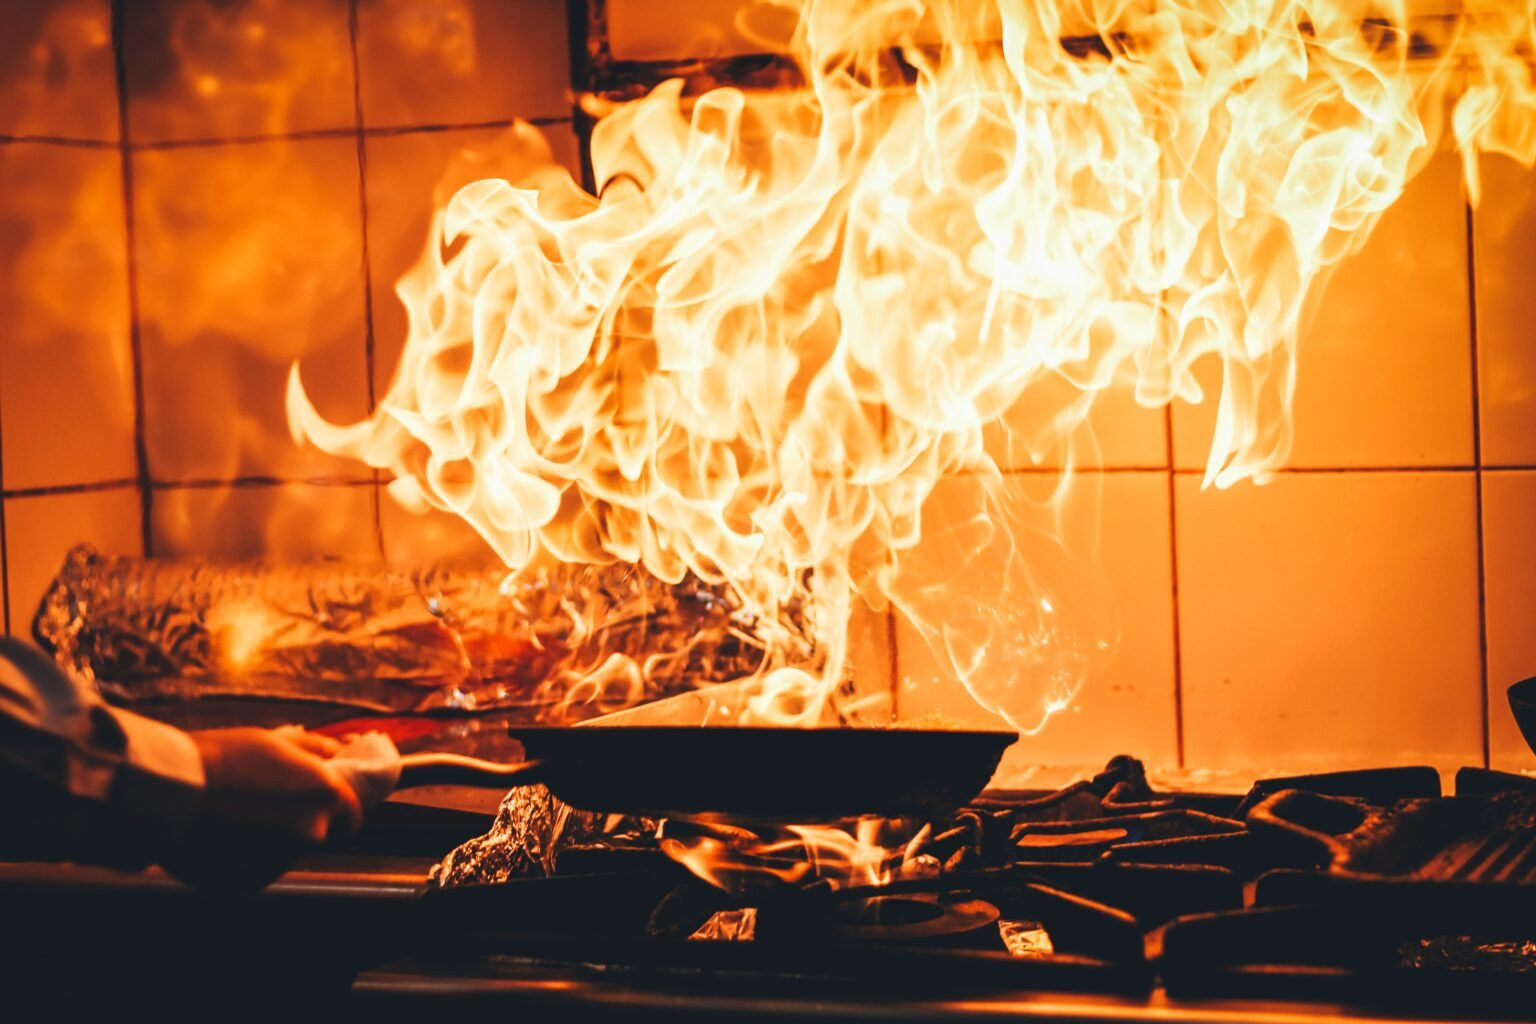 6 việc gần như ai cũng làm trong bếp nhưng lại cực kì nguy hiểm, có thể gây cháy nổ - Ảnh 2.